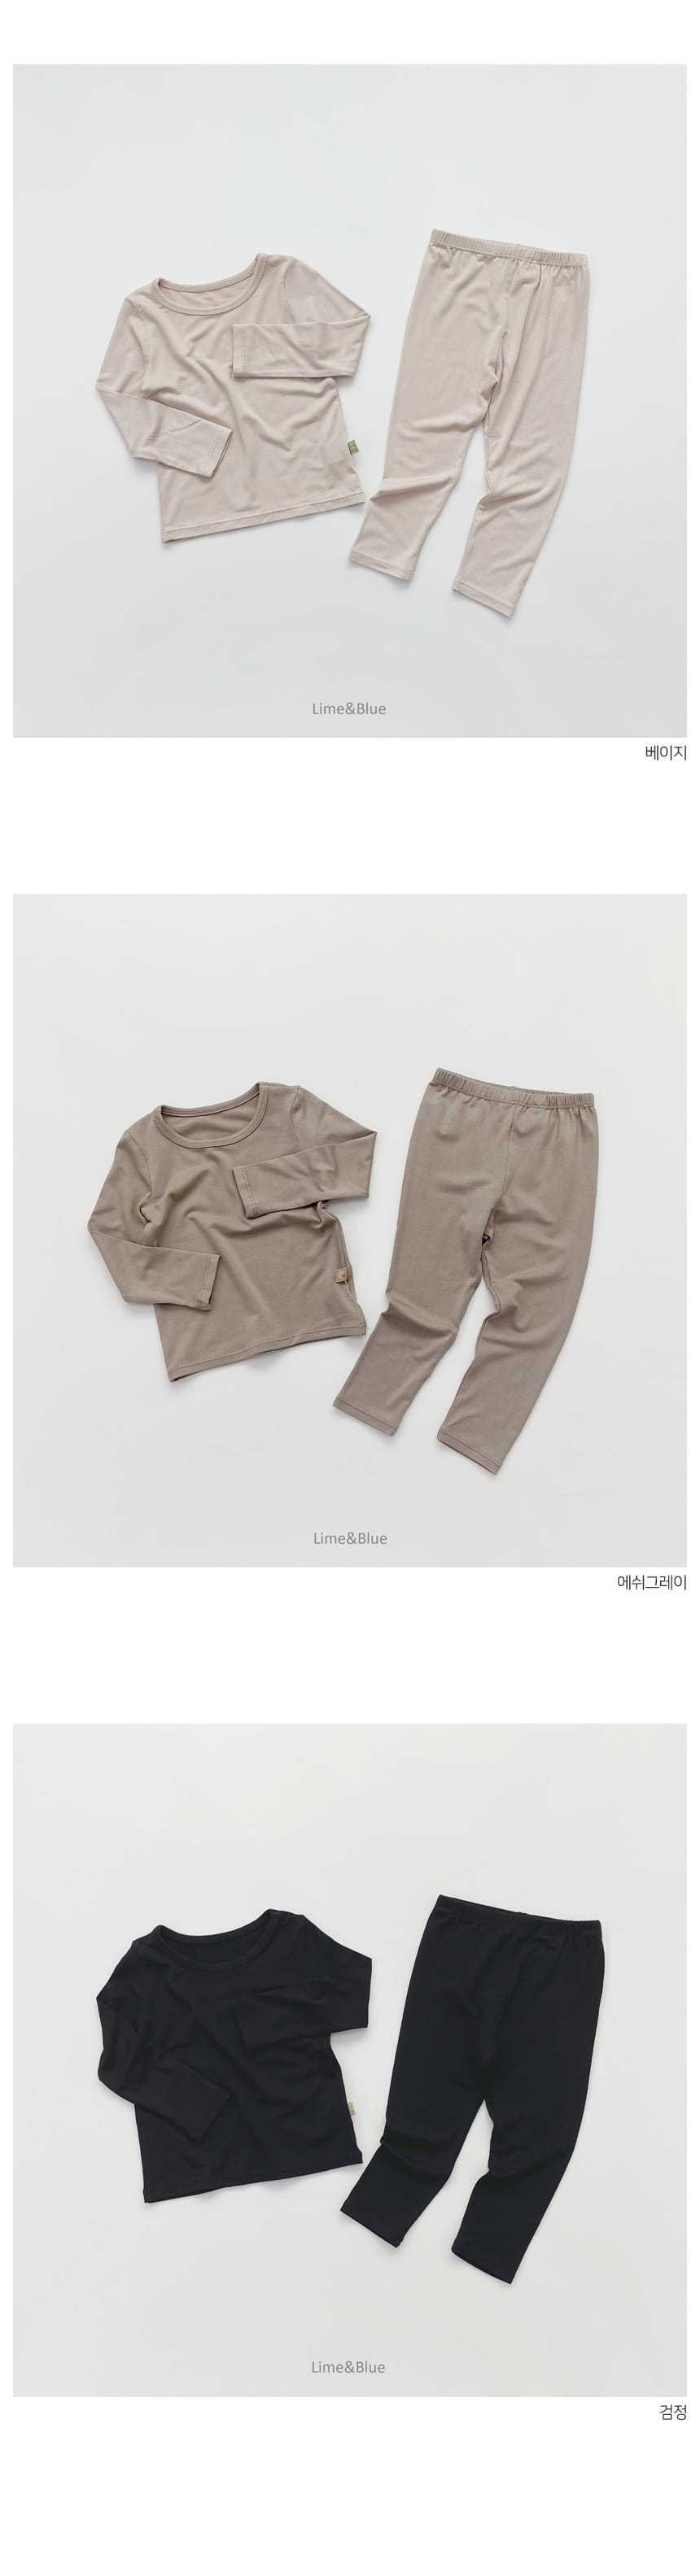 Lime & Blue - Korean Children Fashion - #littlefashionista - New Heattex Easy Wear - 4